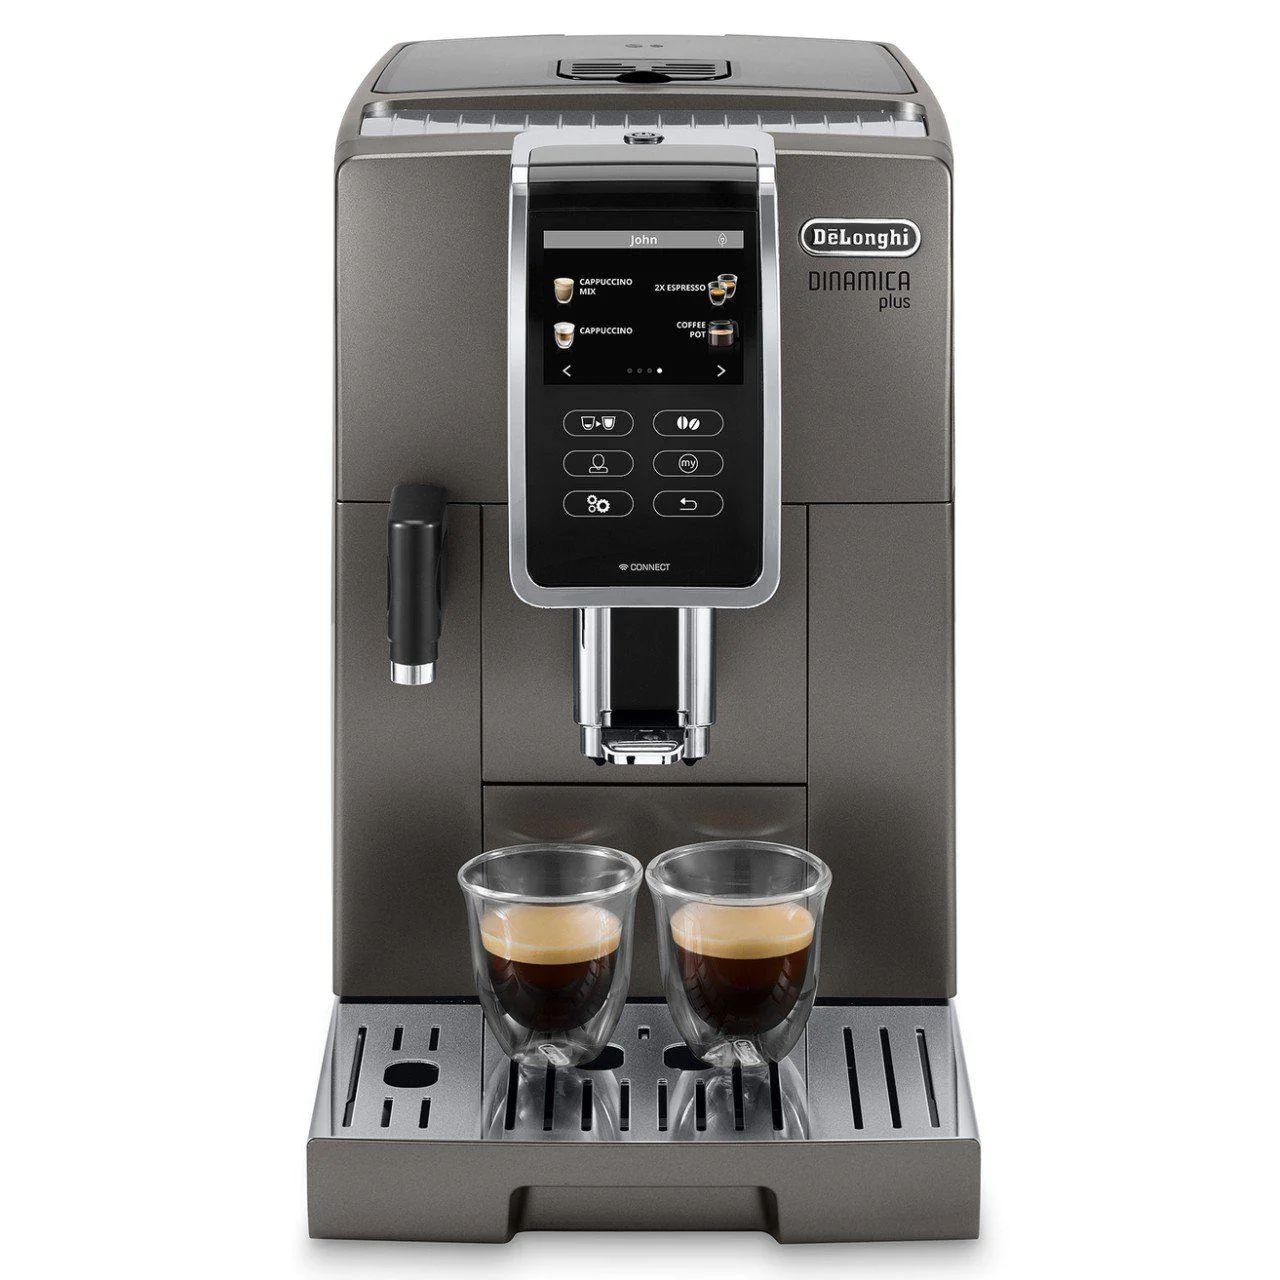 Delonghi Dinamica Plus Connected ECAM37095TI Super Automatic Coffee Machine - Unused Open Box